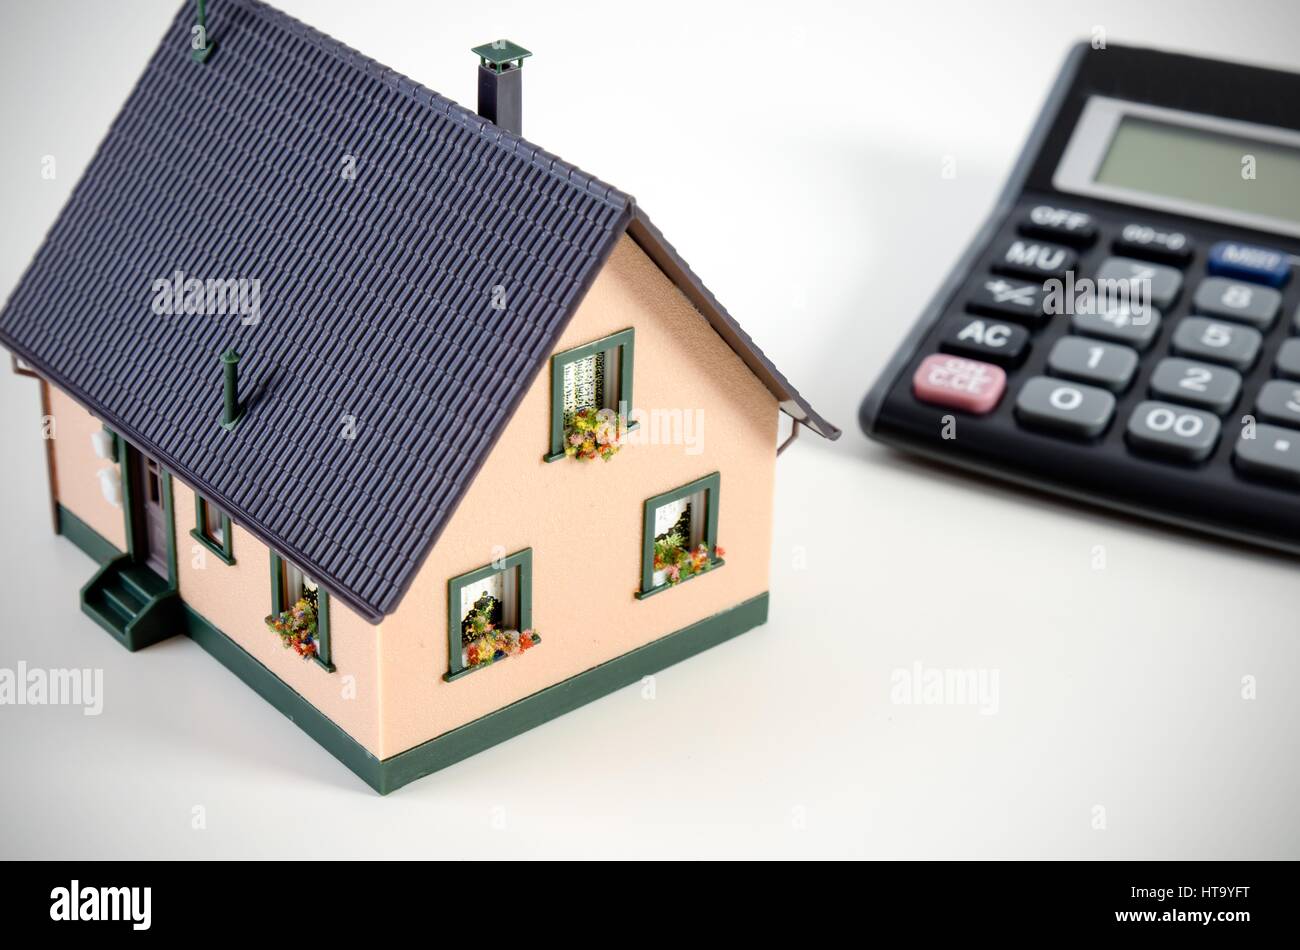 Home finanze o il salvataggio di una casa. Casa in miniatura e calcolatrice Foto Stock